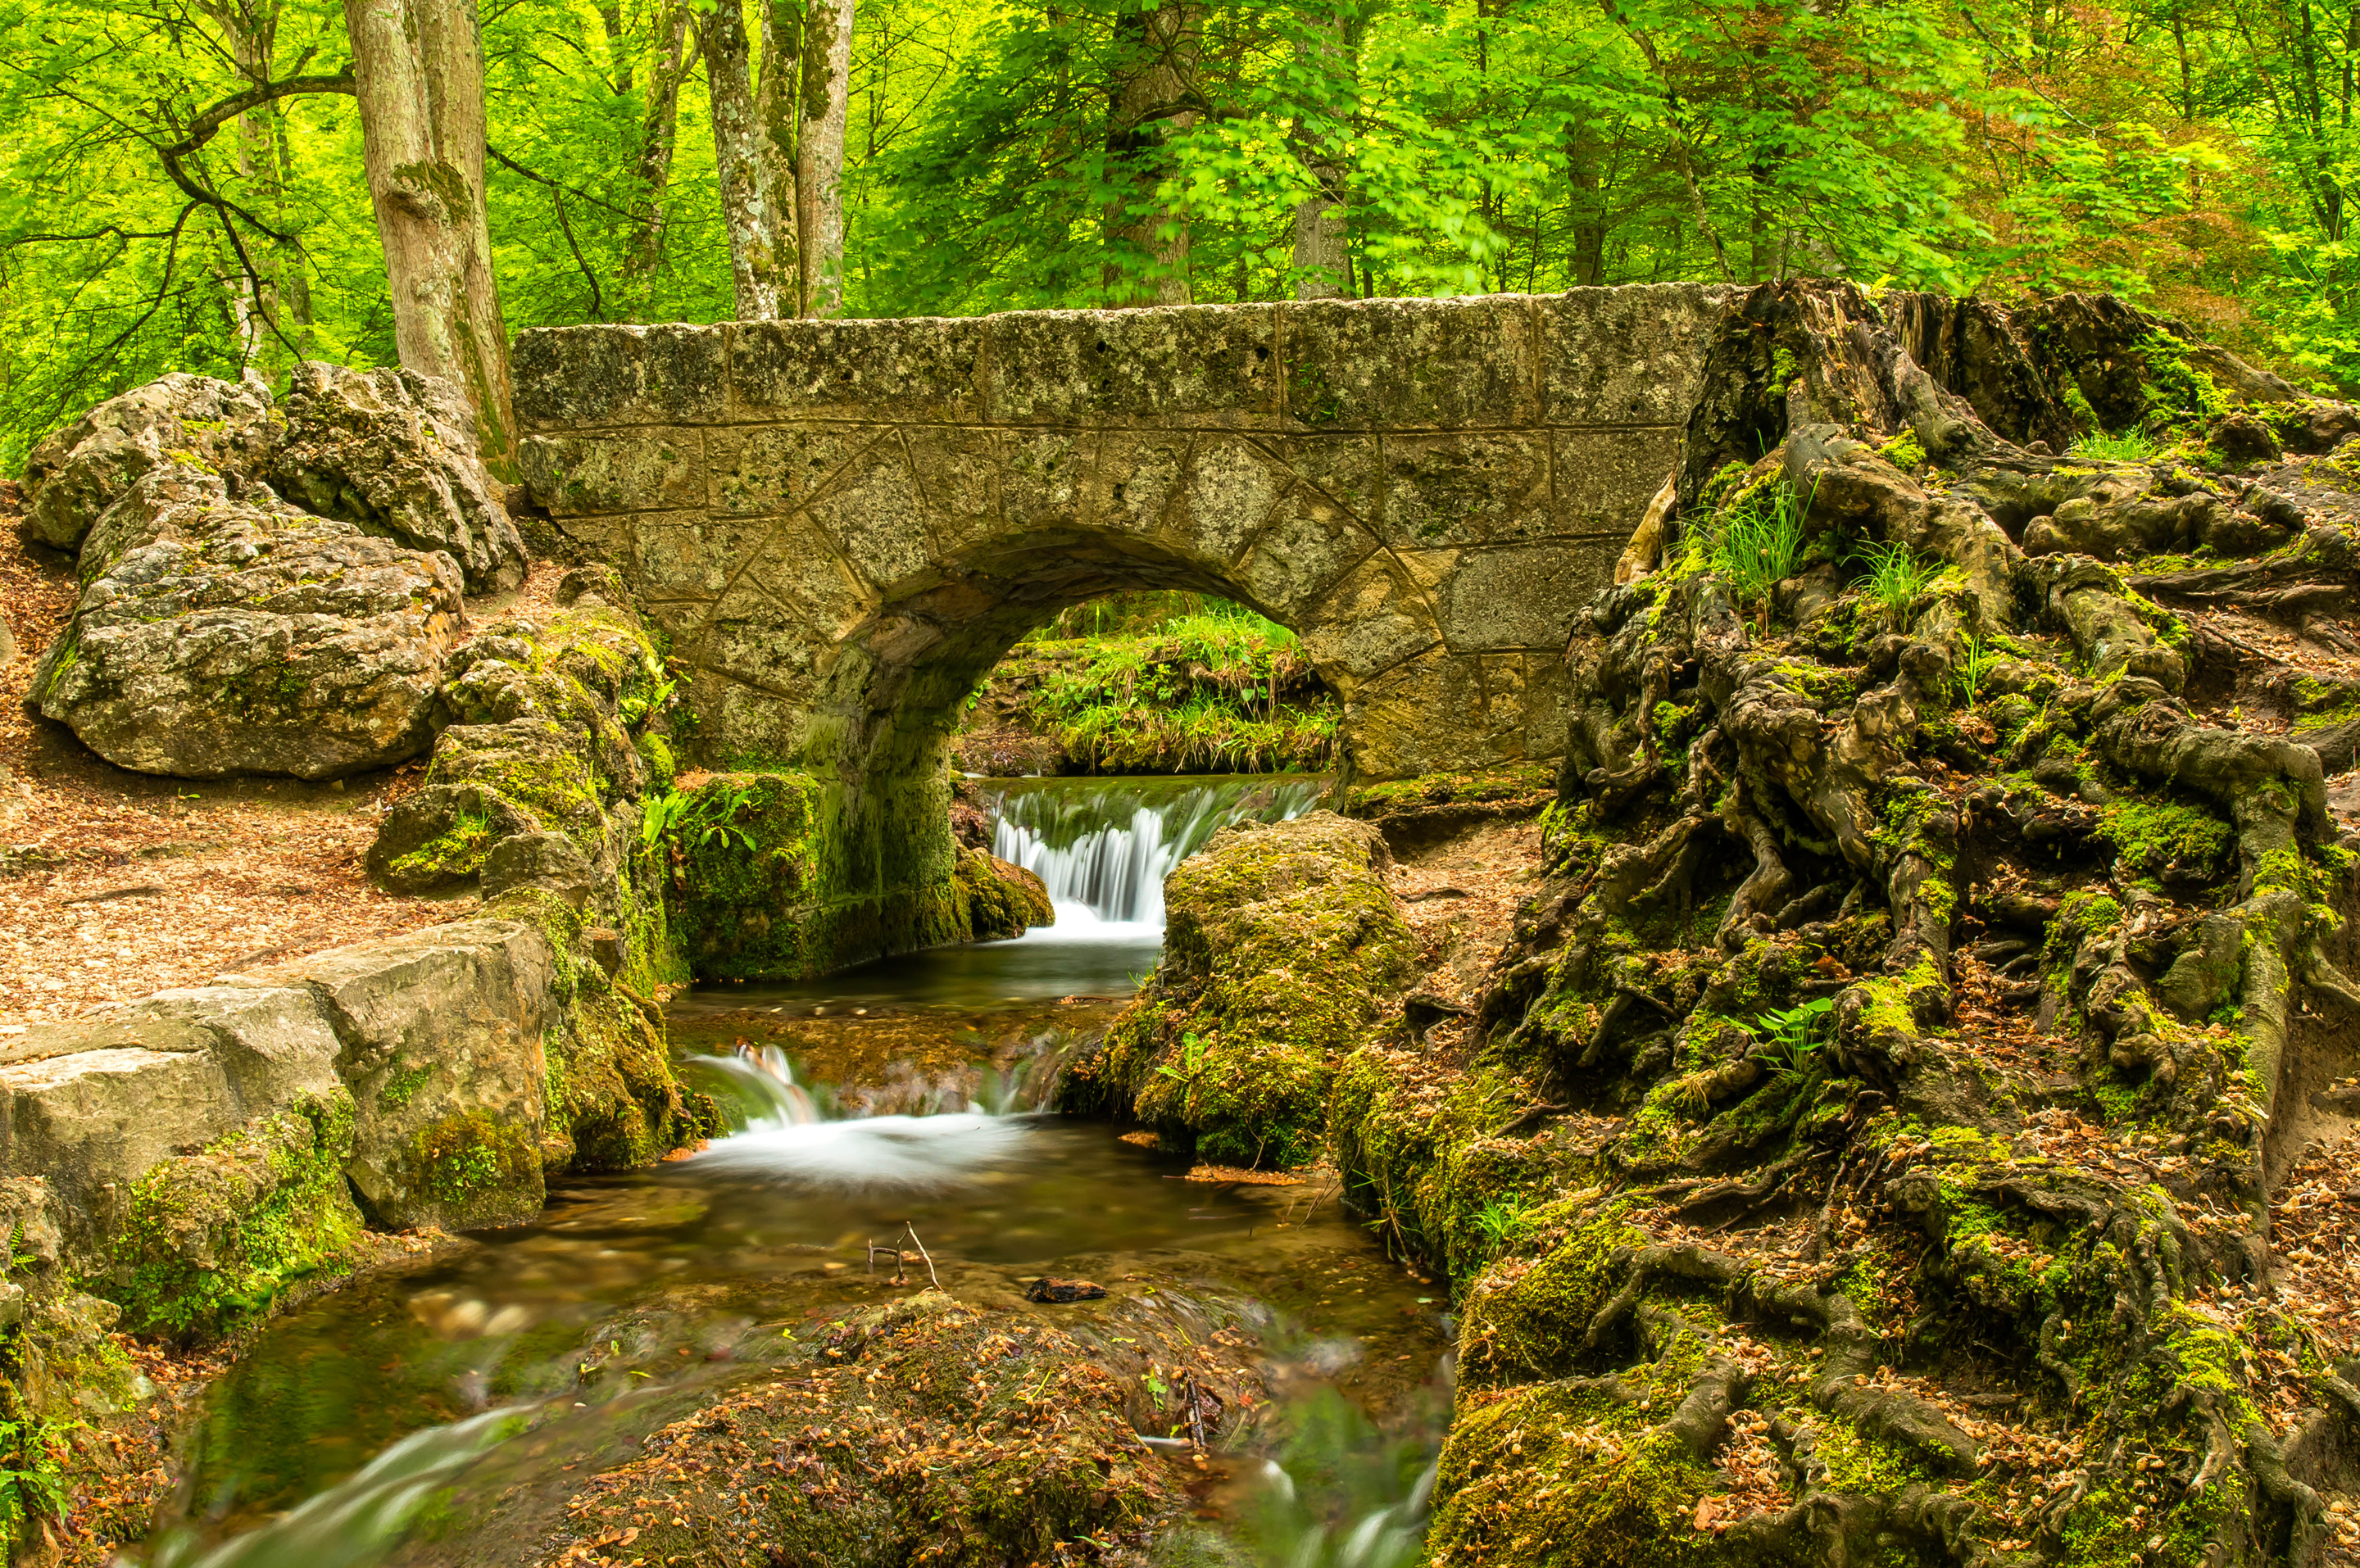 камни речка мостик деревья зелень лето скачать